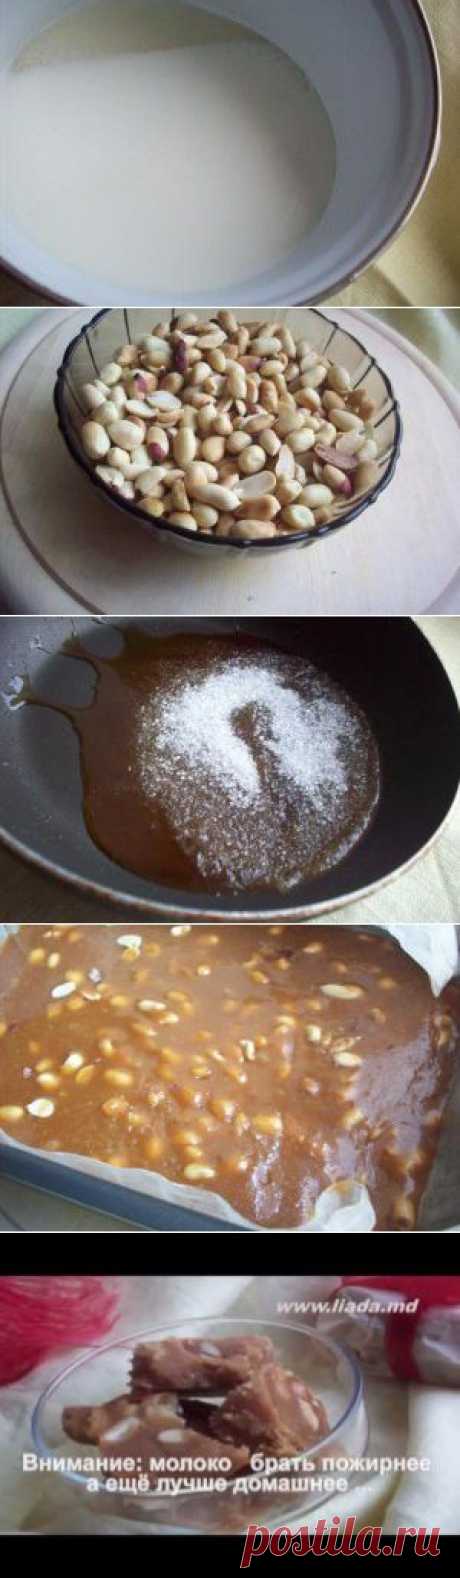 Вареный сахар рецепт с фото, как приготовить.